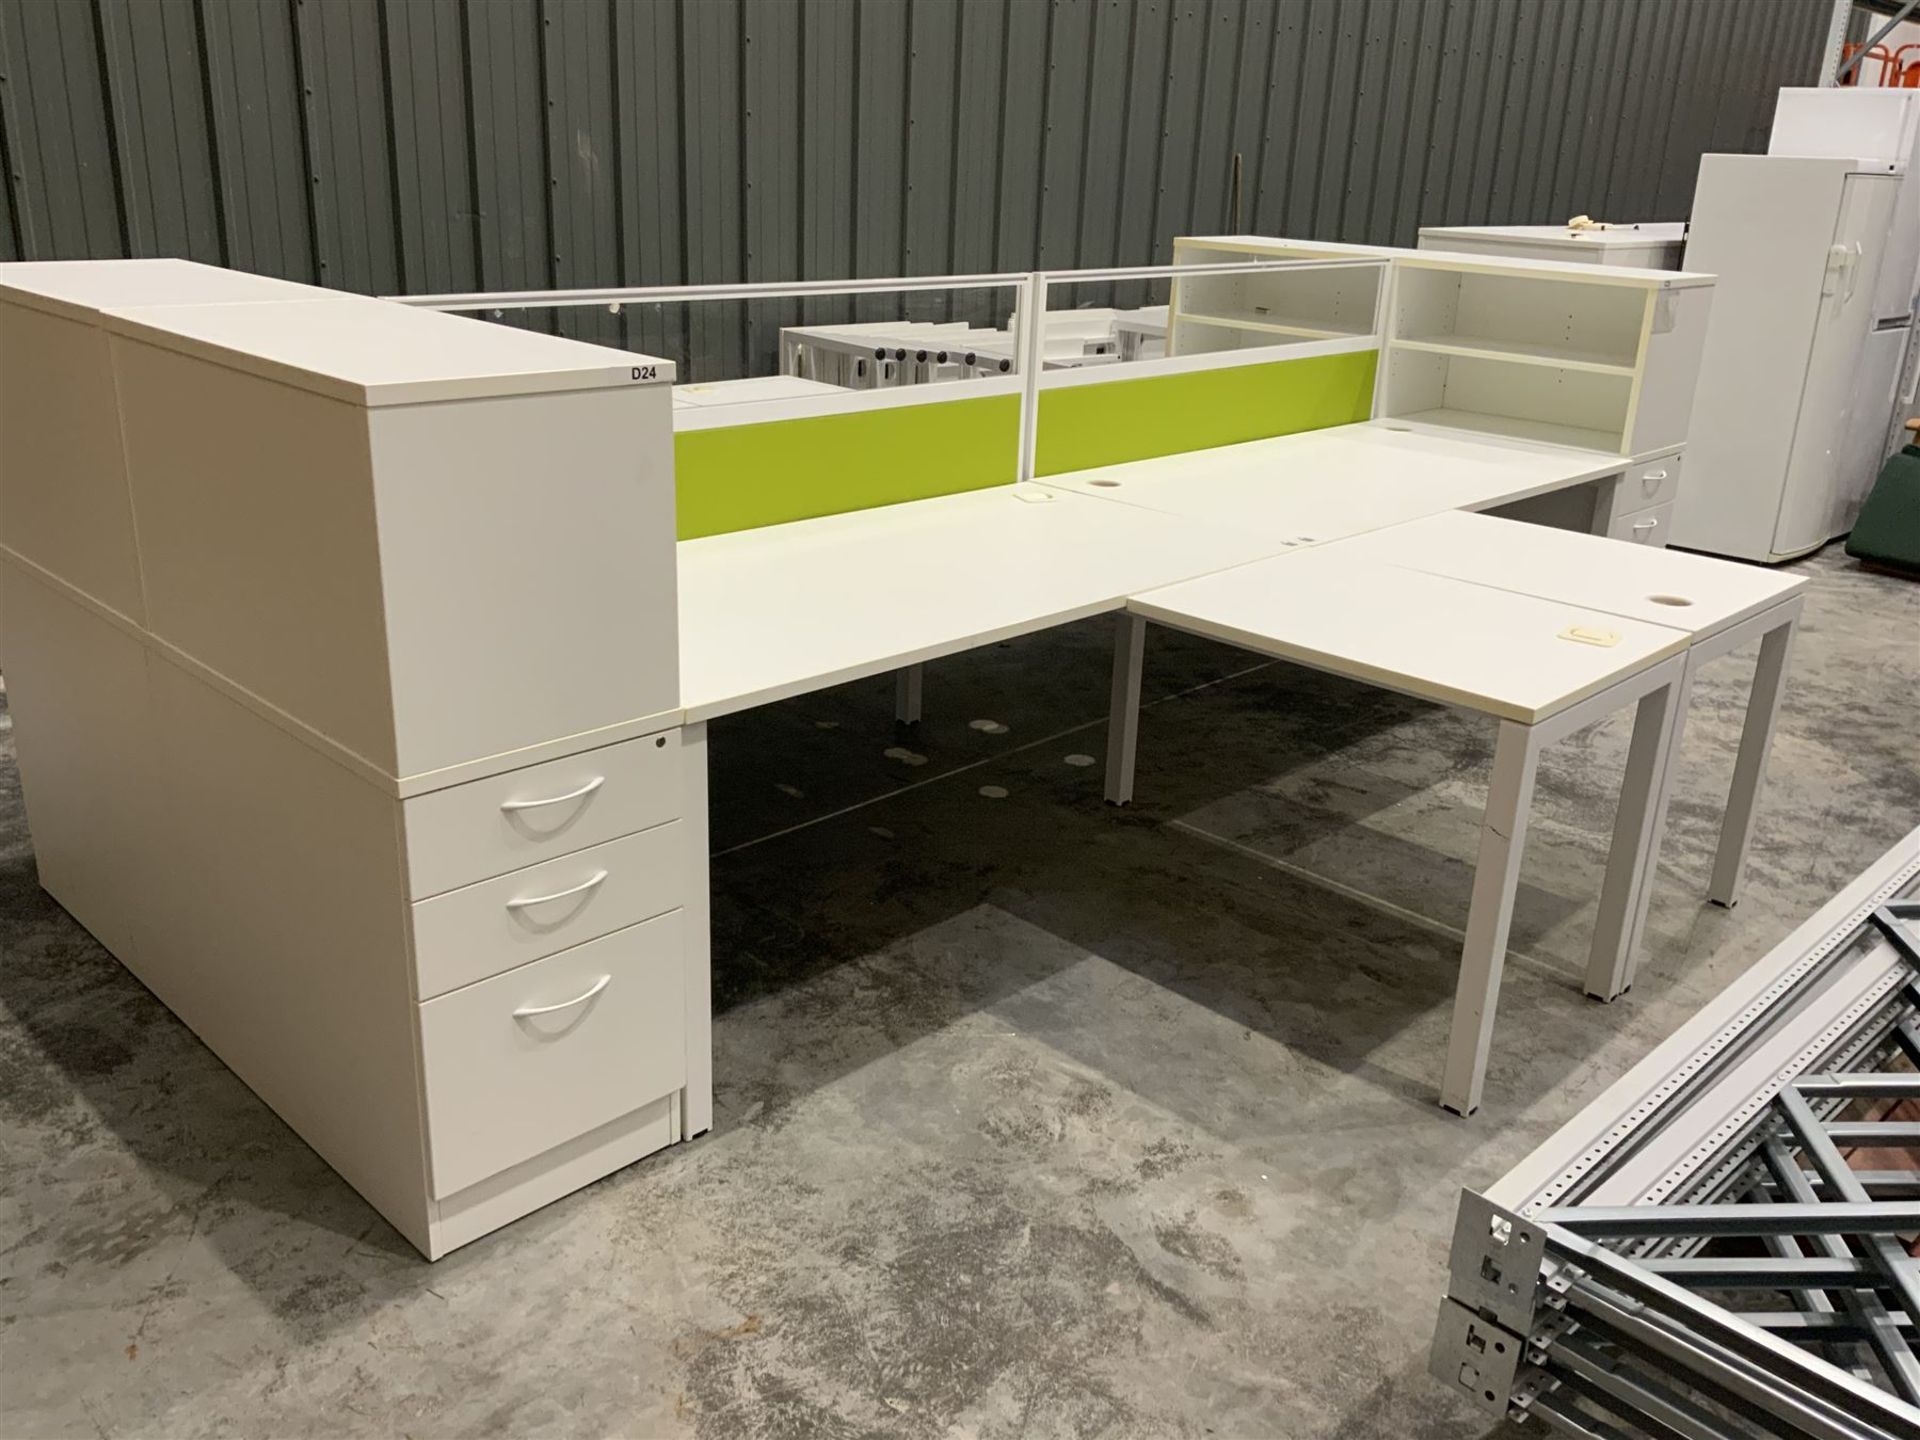 Modular four desk office system - comprising four desks - Image 4 of 4